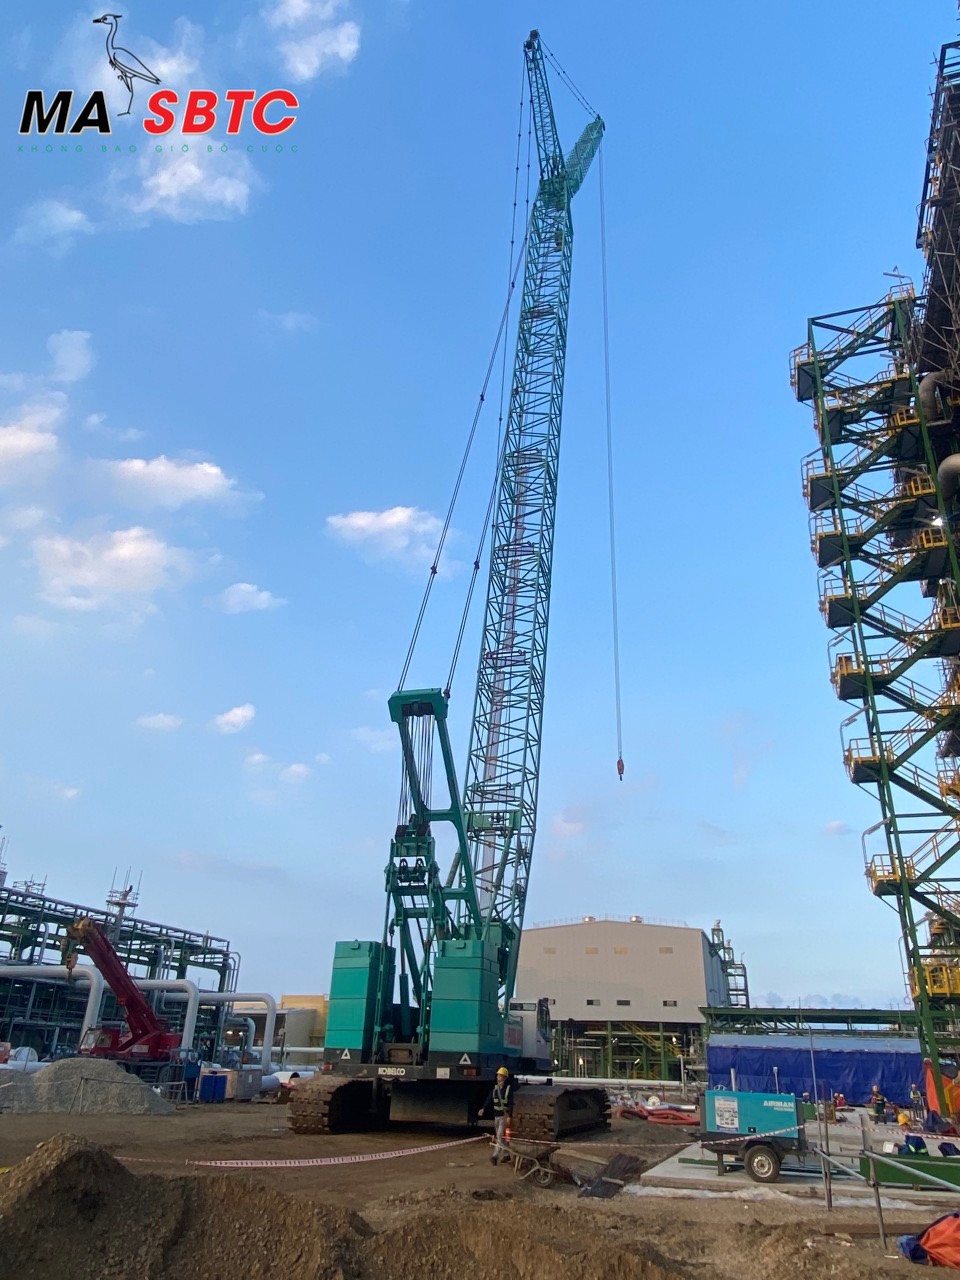 Cho thuê cẩu xích 250 tấn tại MA-SBTC Việt Nam